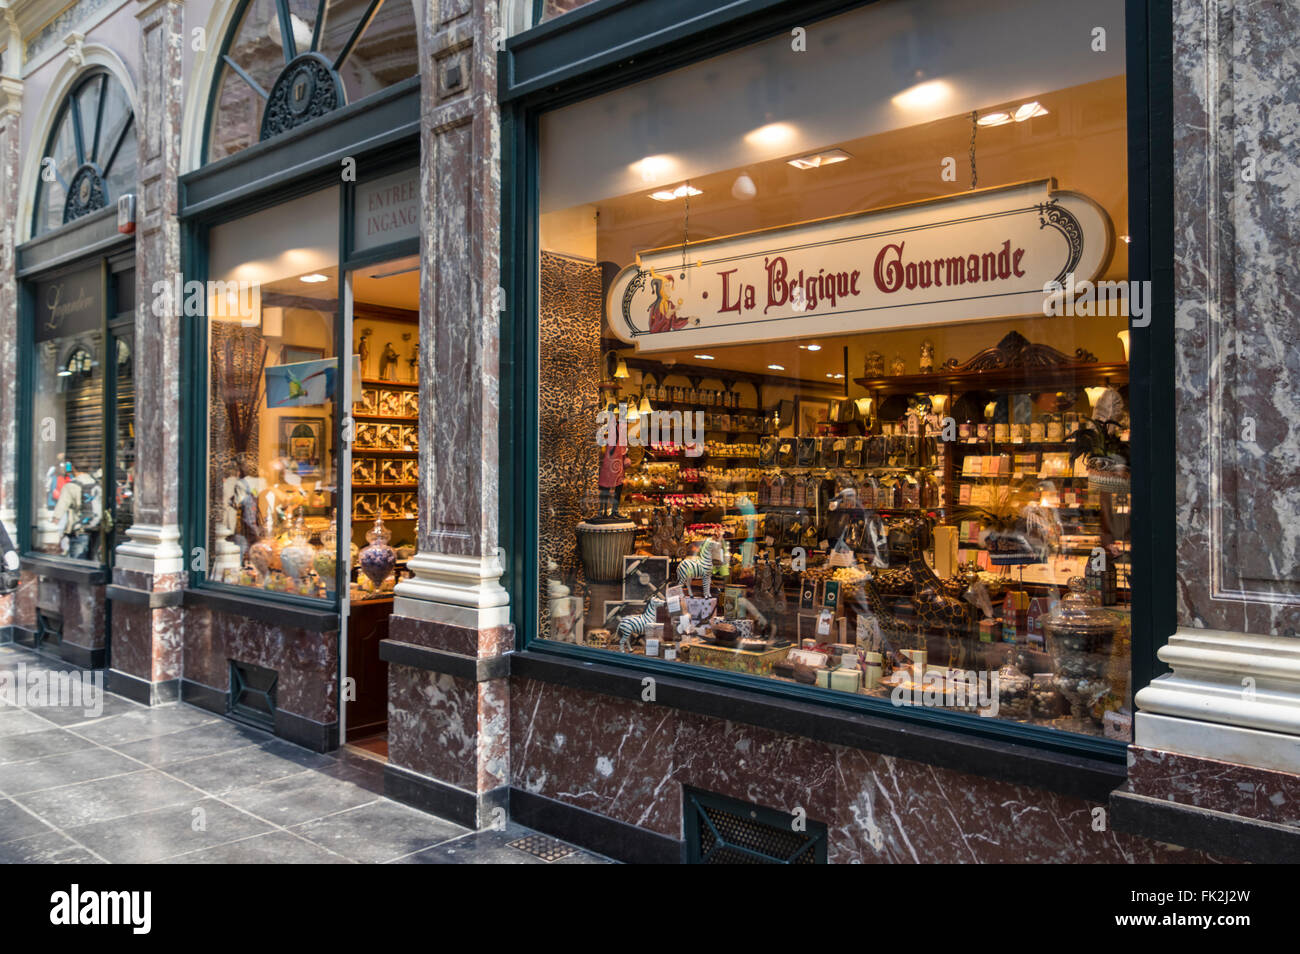 Brussels chocolate Banque de photographies et d'images à haute résolution -  Alamy